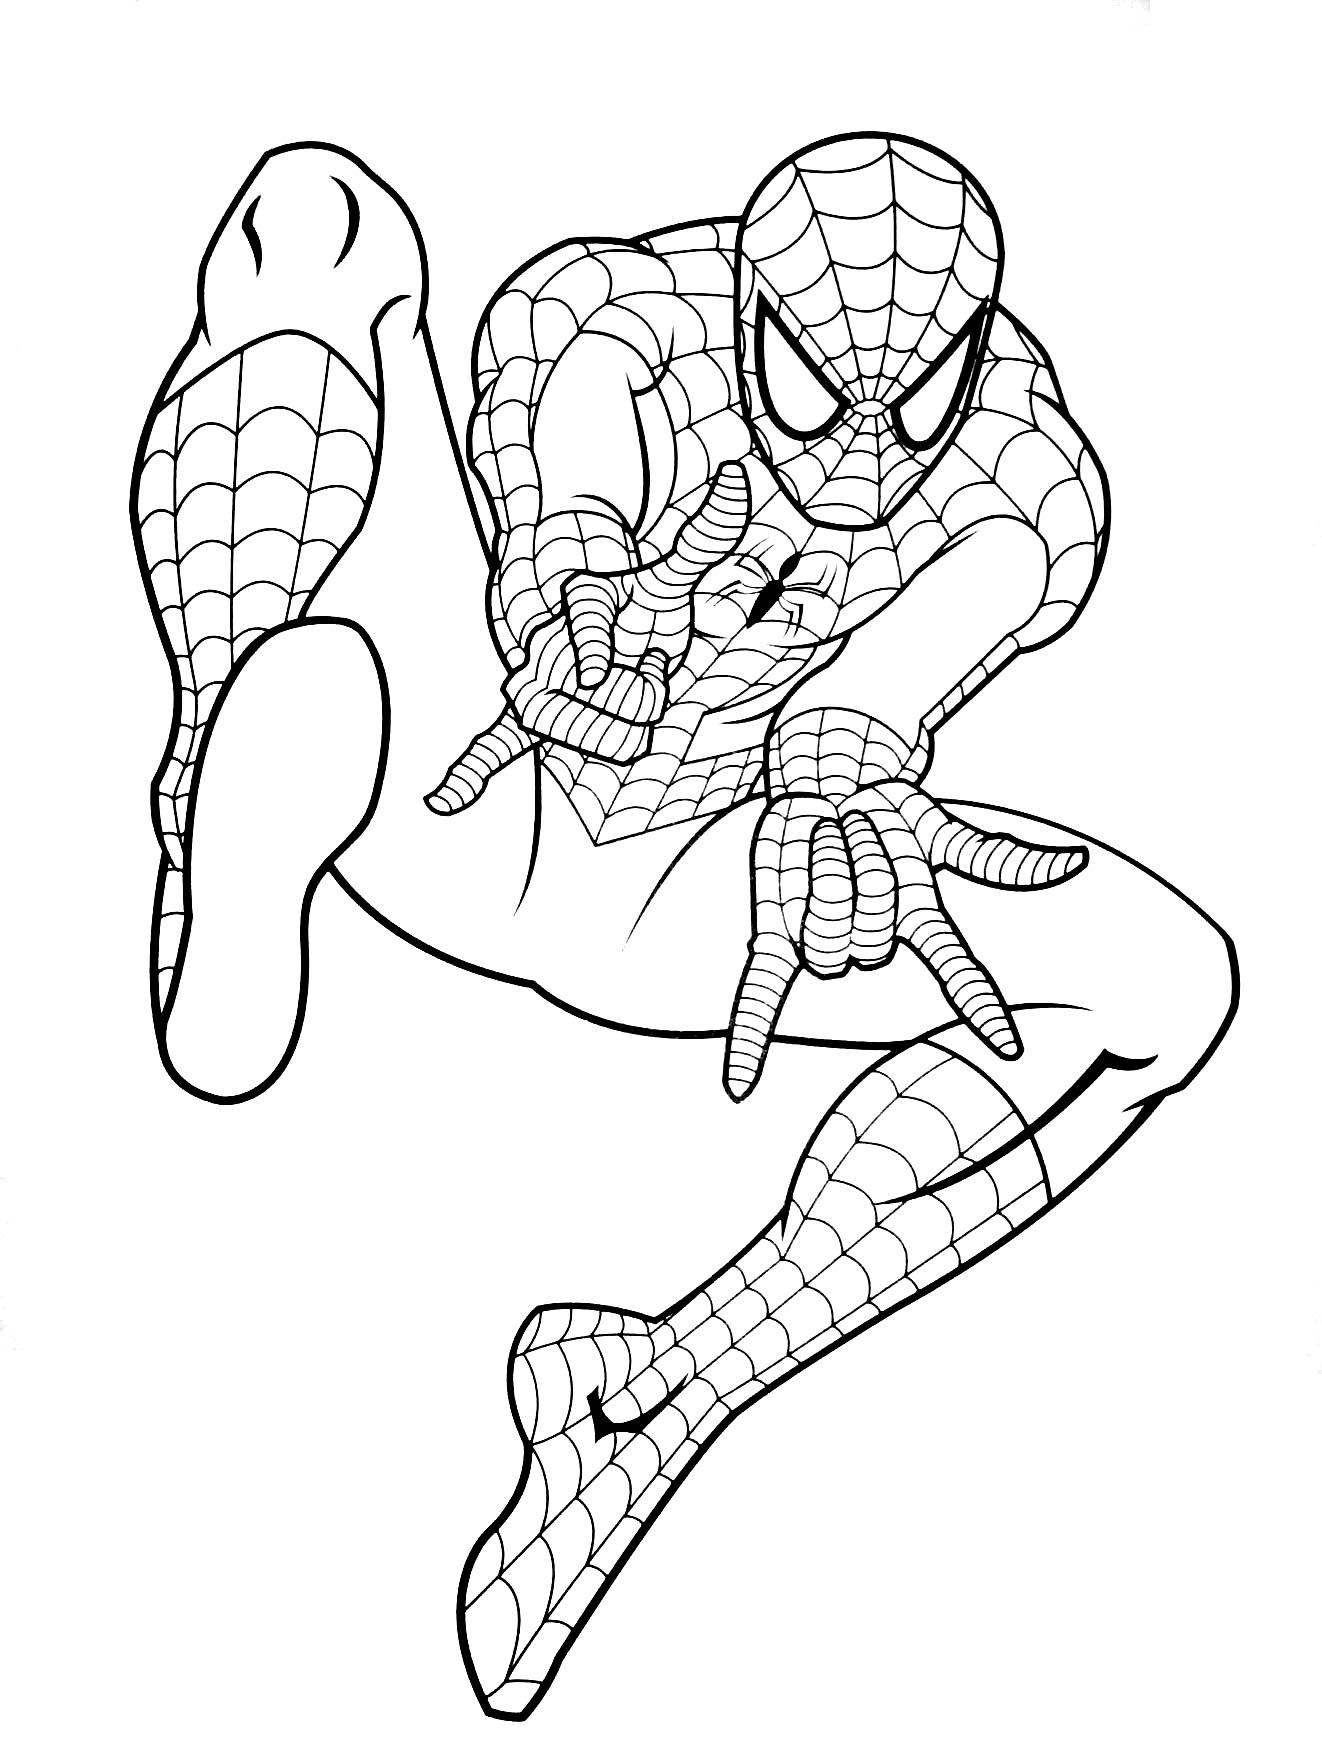 Spiderman gratuit 6 - Coloriage Spiderman - Coloriages pour enfants